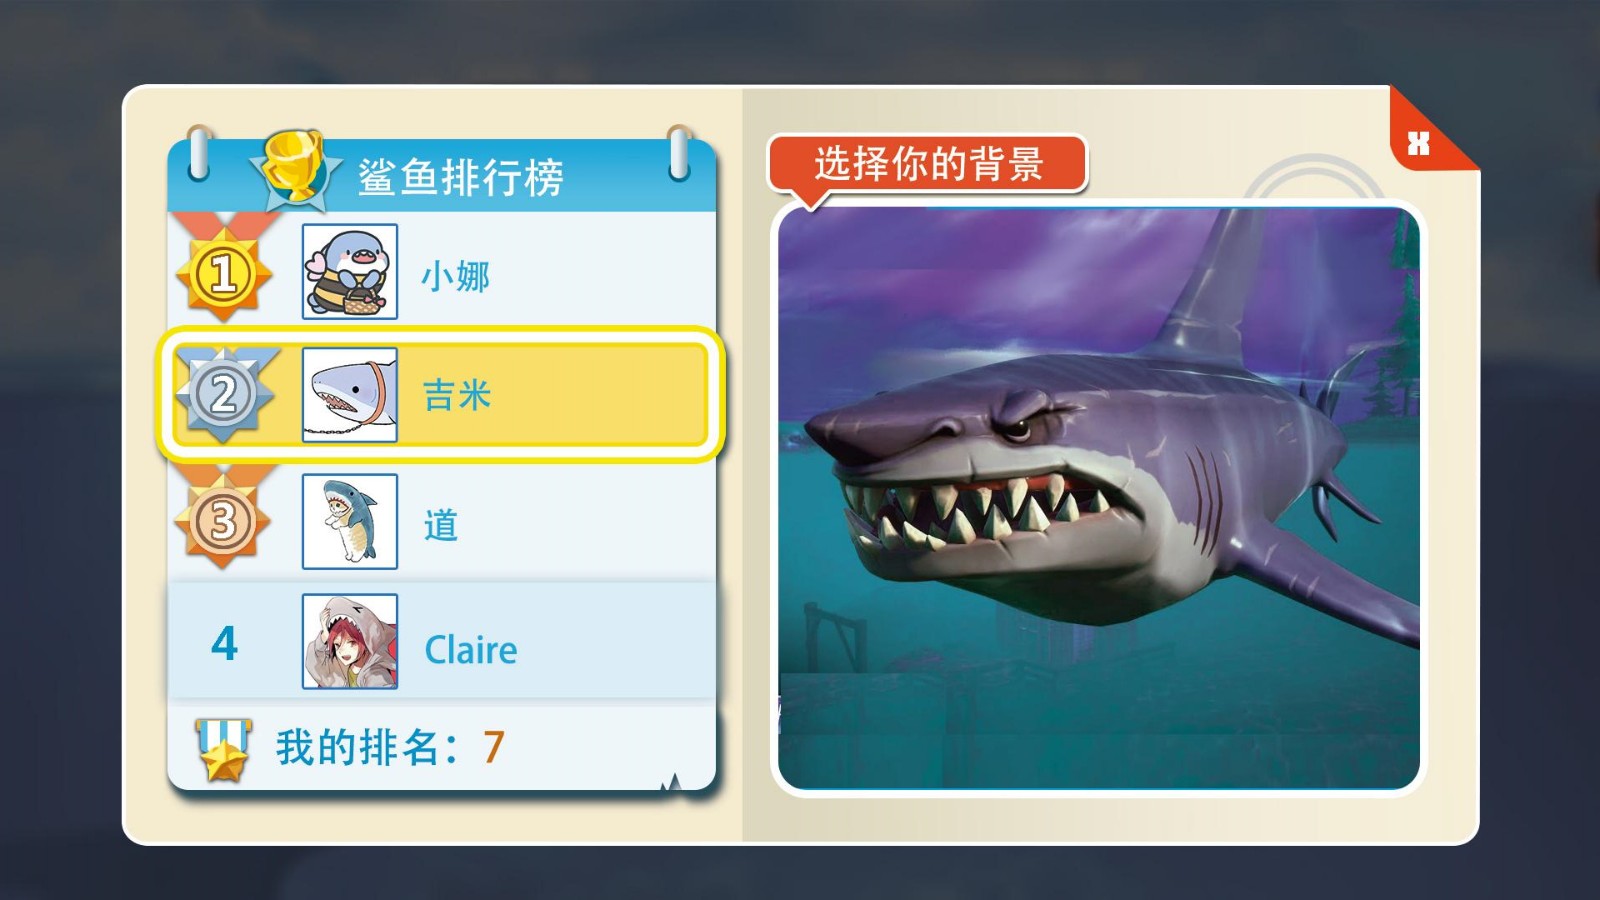 大白鲨真实模拟好玩吗 大白鲨真实模拟玩法简介